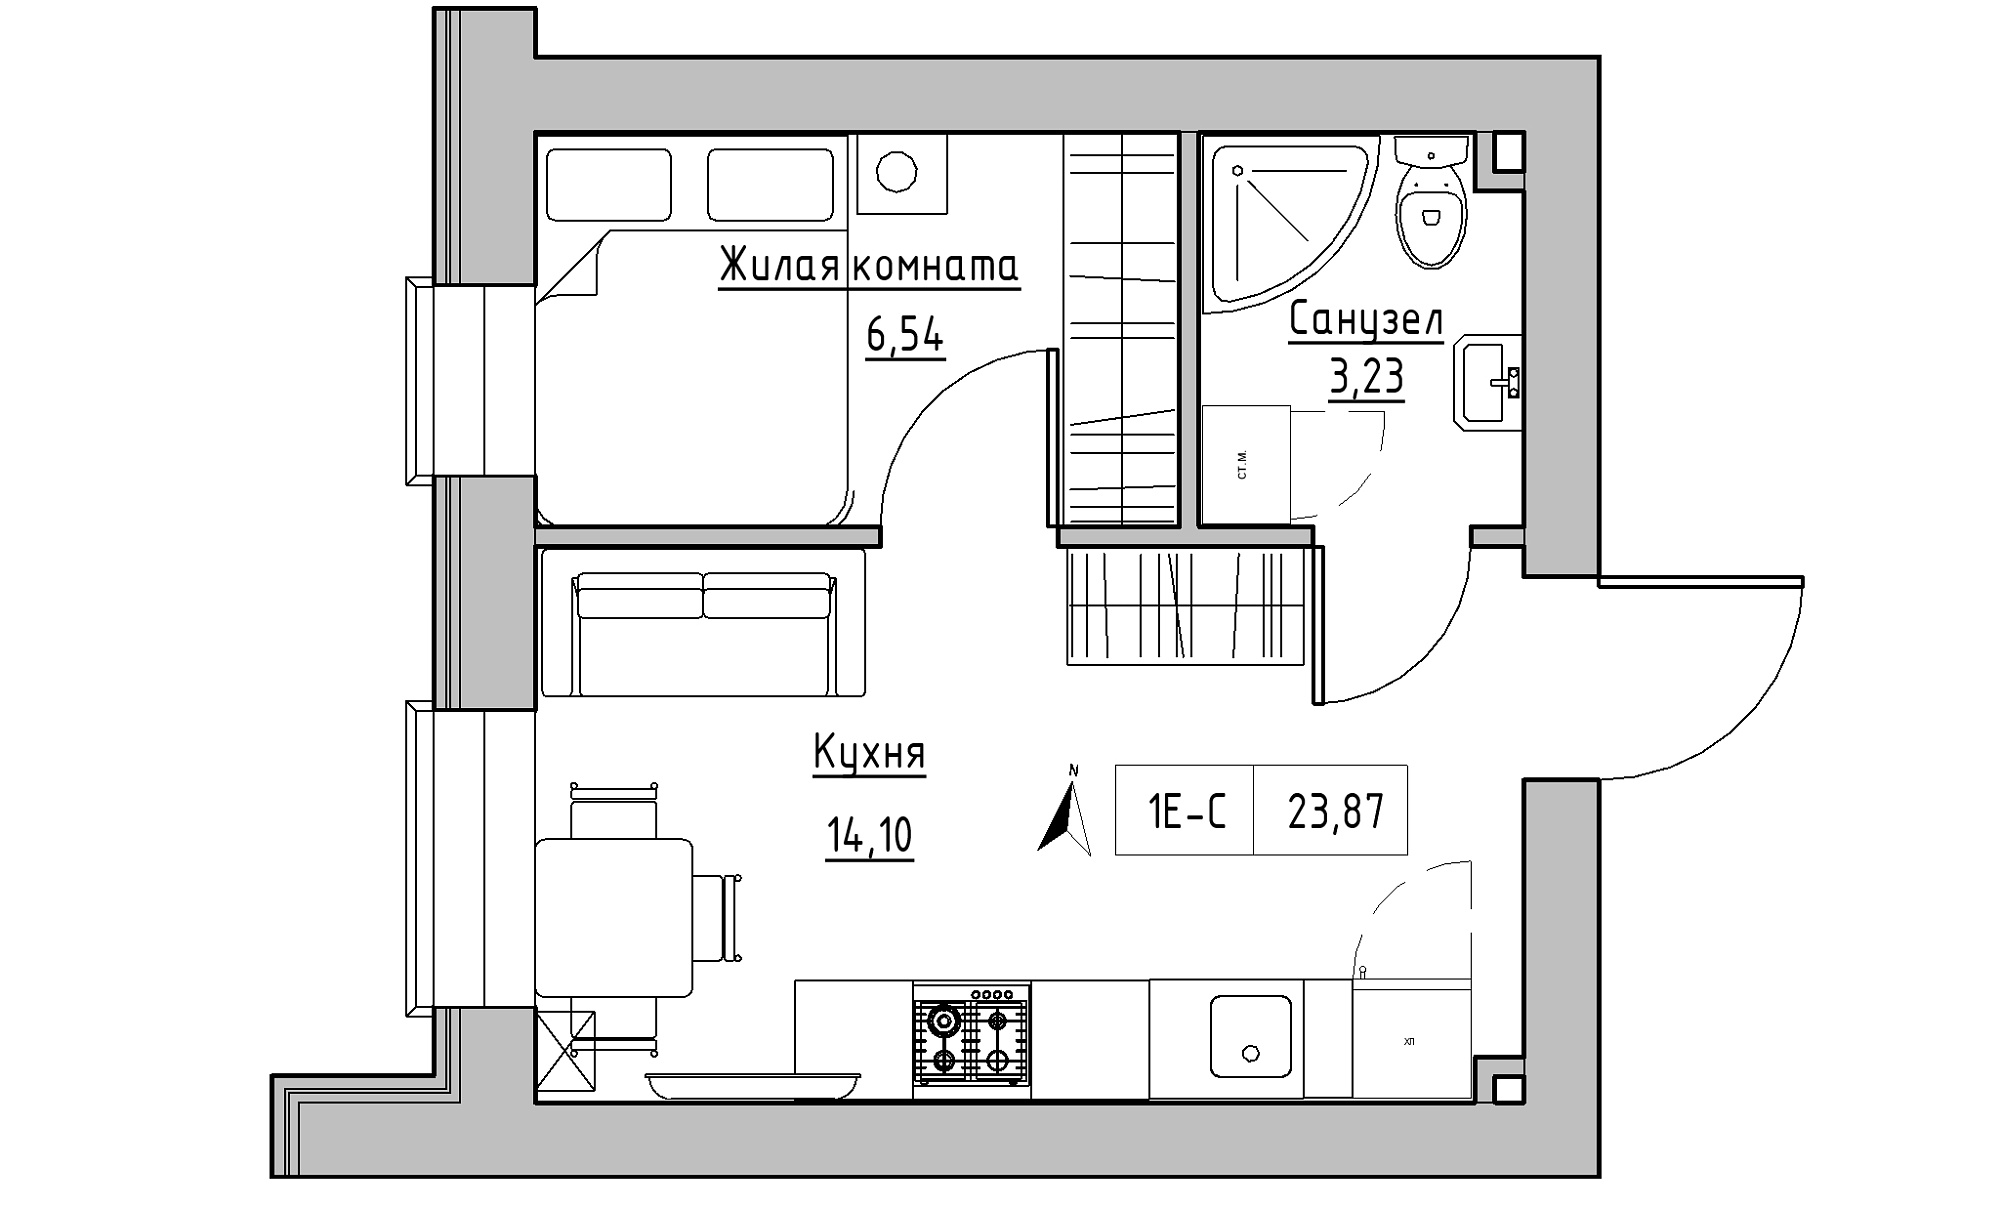 Планування 1-к квартира площею 23.87м2, KS-016-04/0012.